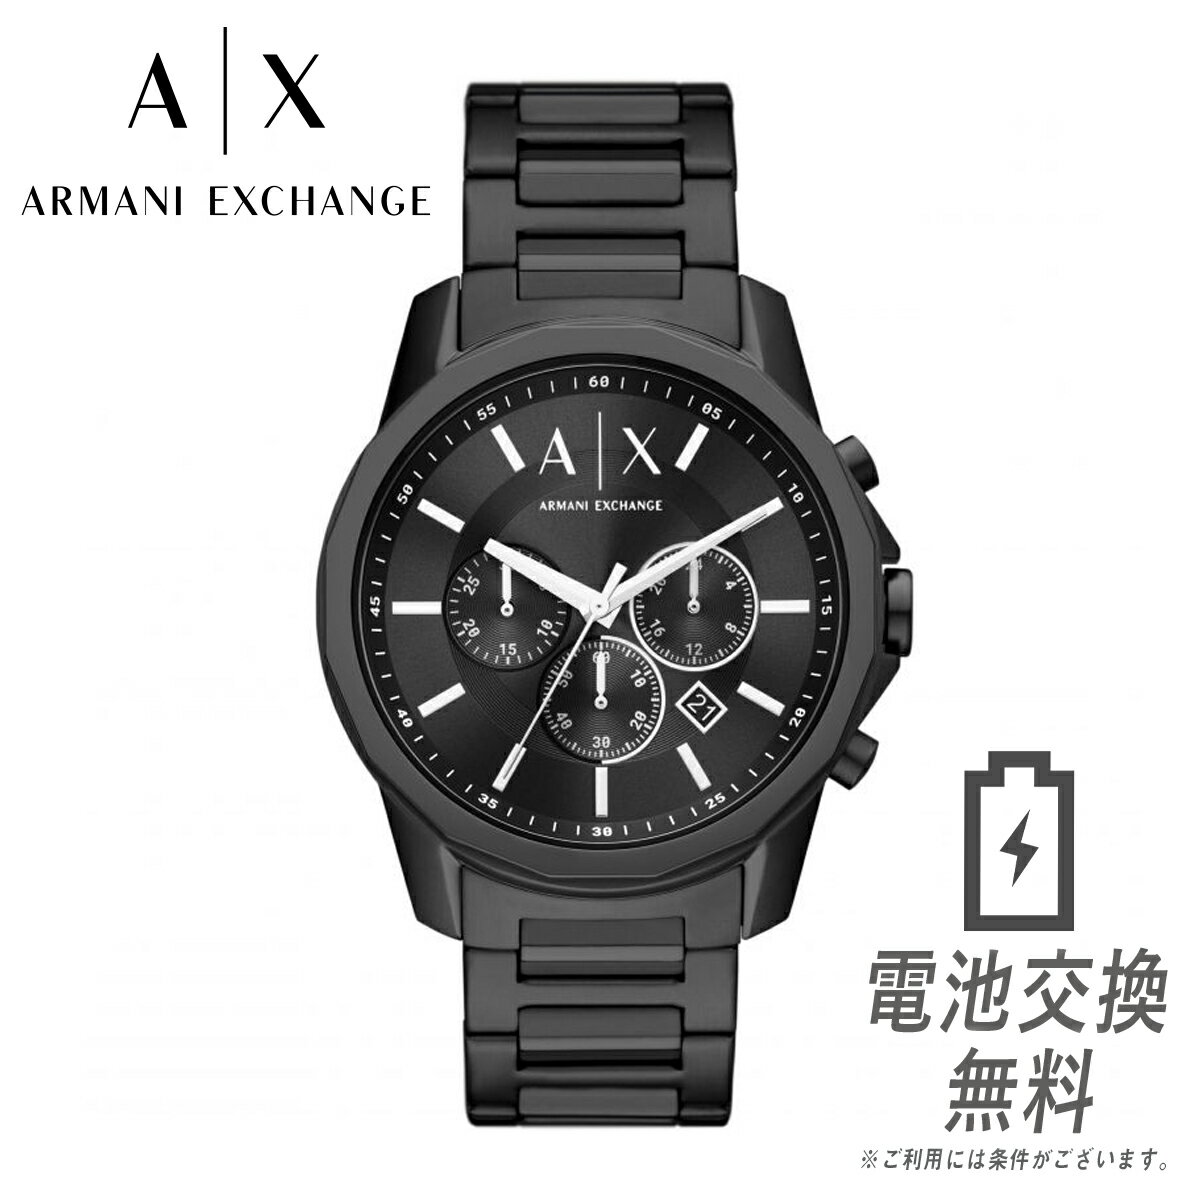 ARMANI EXCHANGE アルマーニ エクスチェンジ メンズ 腕時計 AX1722 ブラック クロノグラフ ビジネスウォッチ メンズウォッチ 男性用 ストップウォッチ ステンレス ベルト ブレスレット